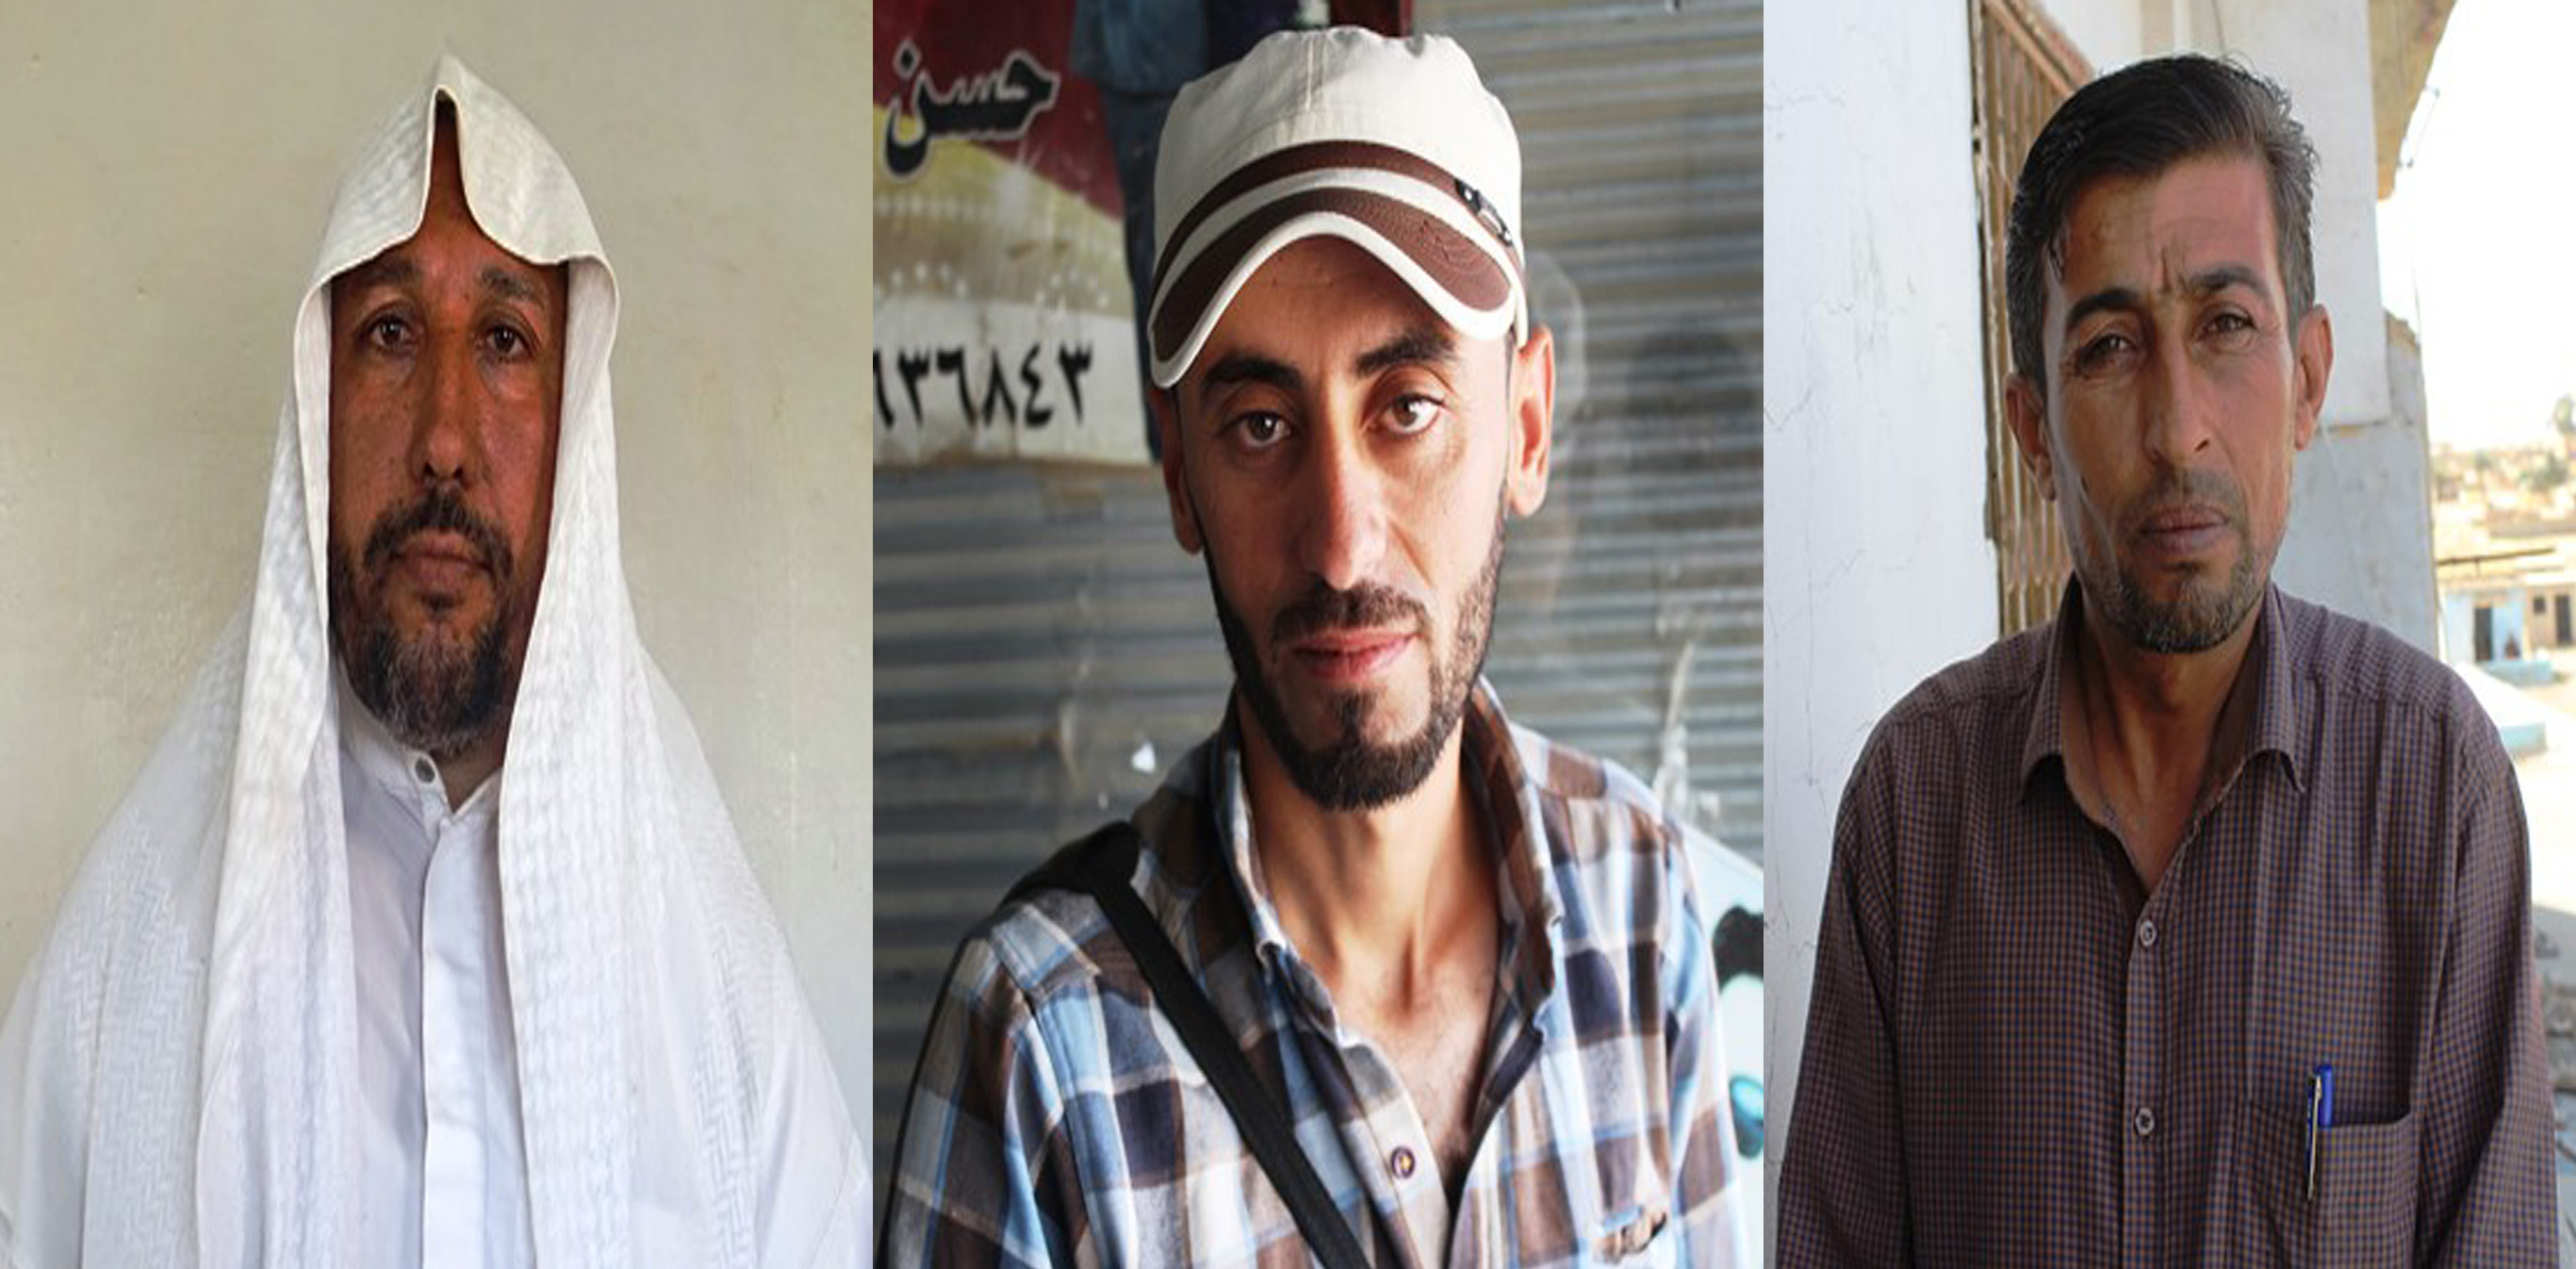 Los residentes de Al-Shaddadi apoyan el "antiterrorismo" y las SDF